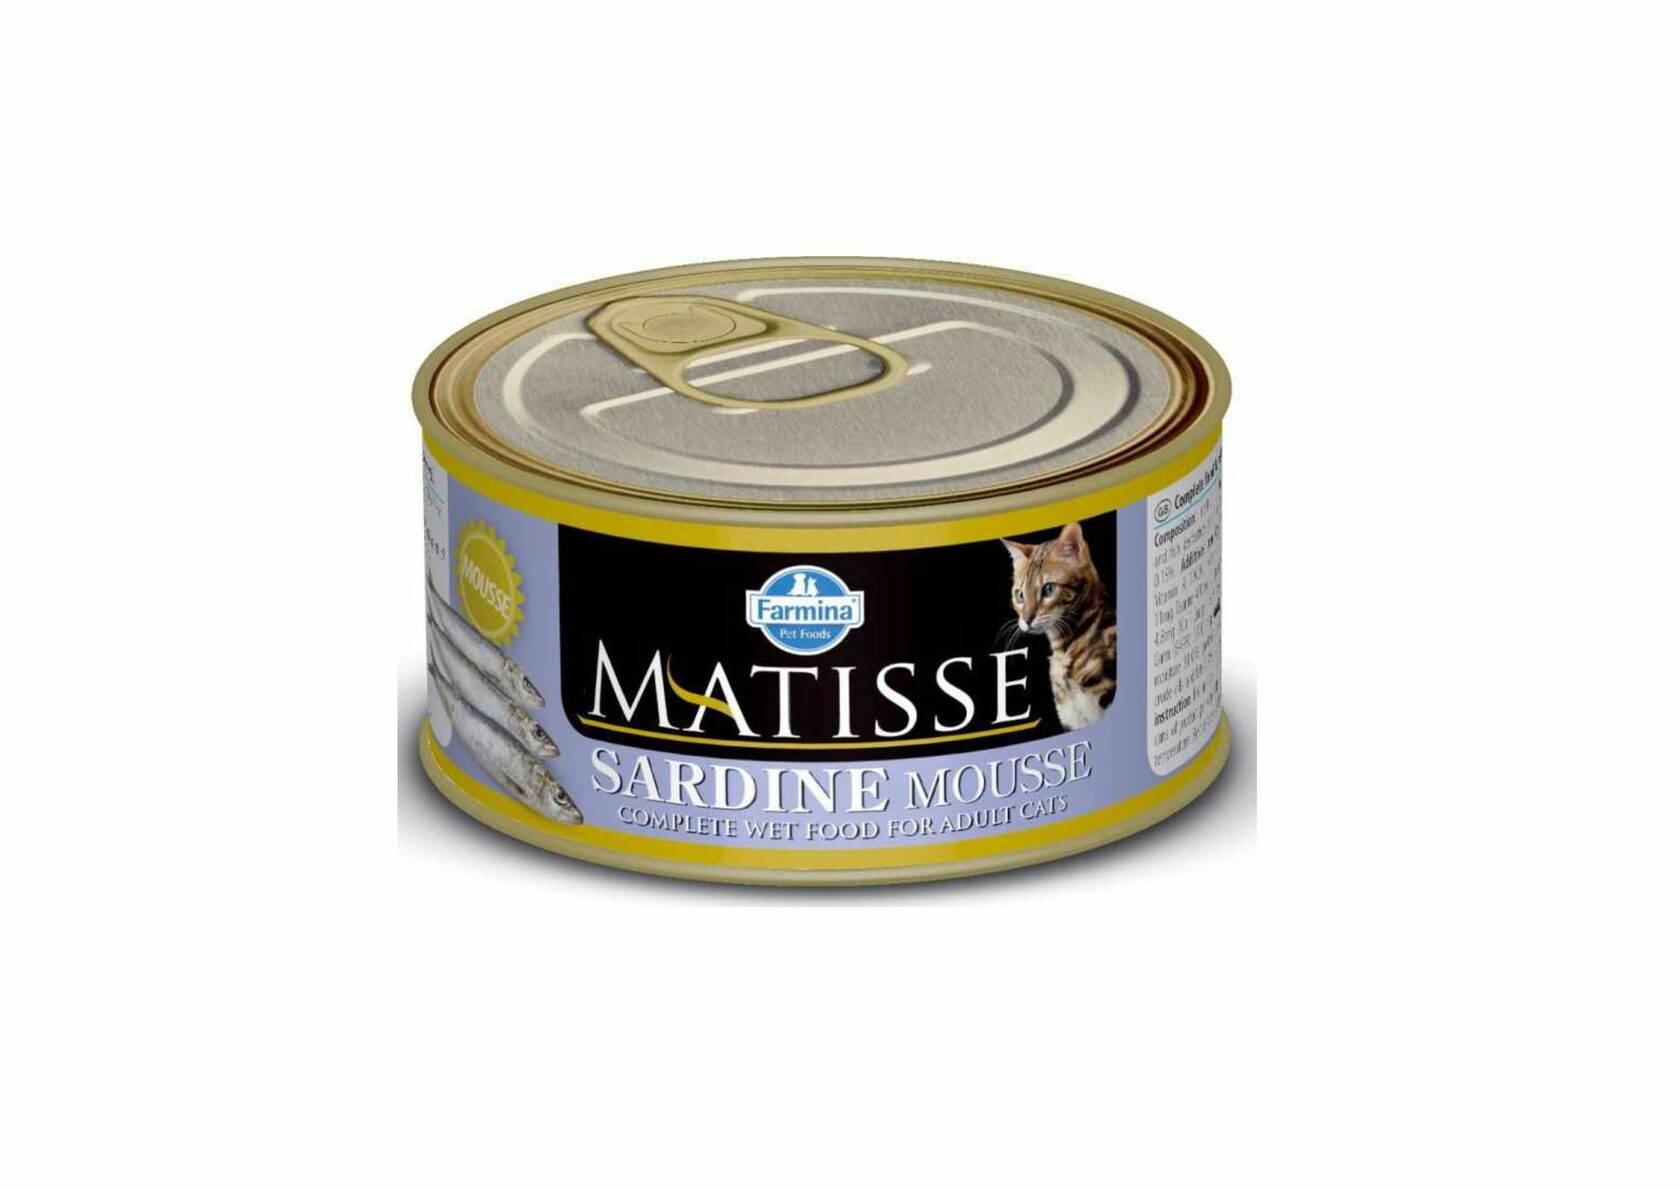 Farmina влажный для кошек. Влажный корм для кошек Farmina Matisse консерва, мусс с треской, 85г. Фармина Матисс мусс для кошек с сардинами 85г. Фармина Матисс корм для кошек. Matisse консервы мусс для кошек с ягненком 85 г.